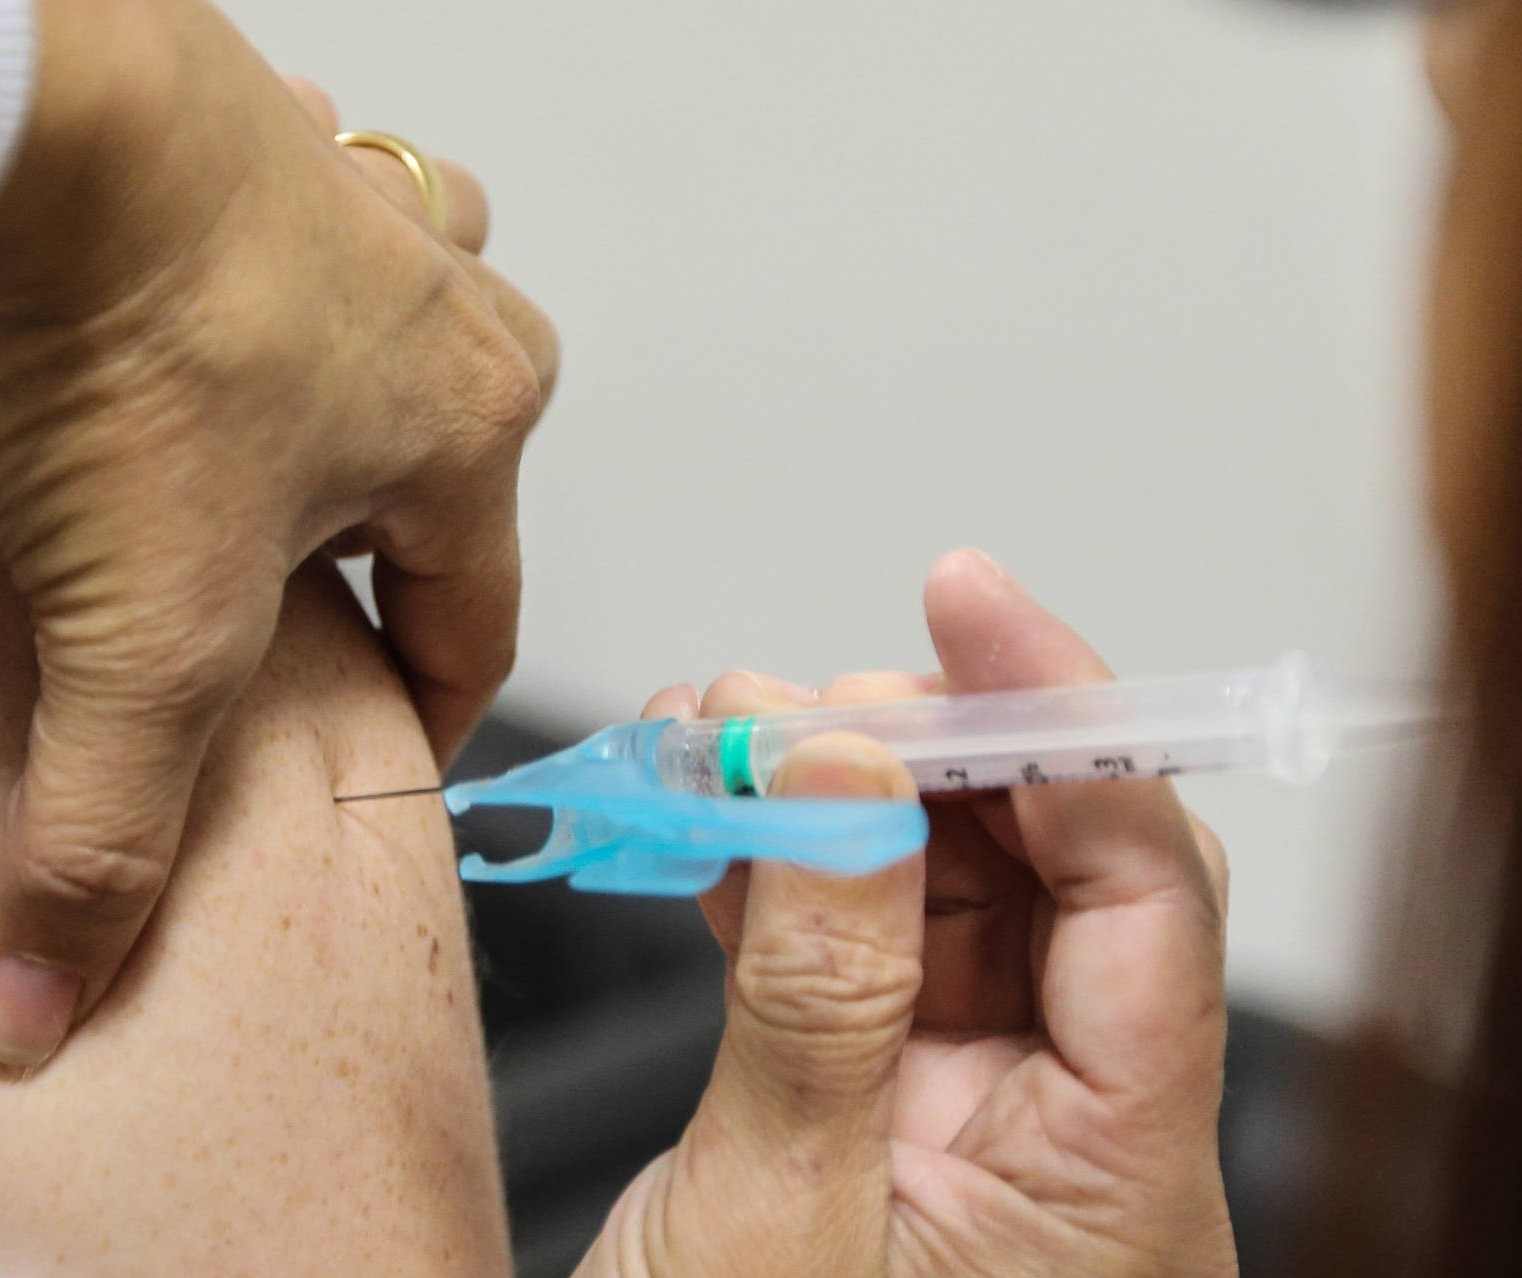 Distribuição de vacinas contra a Covid-19 será reequilibrada